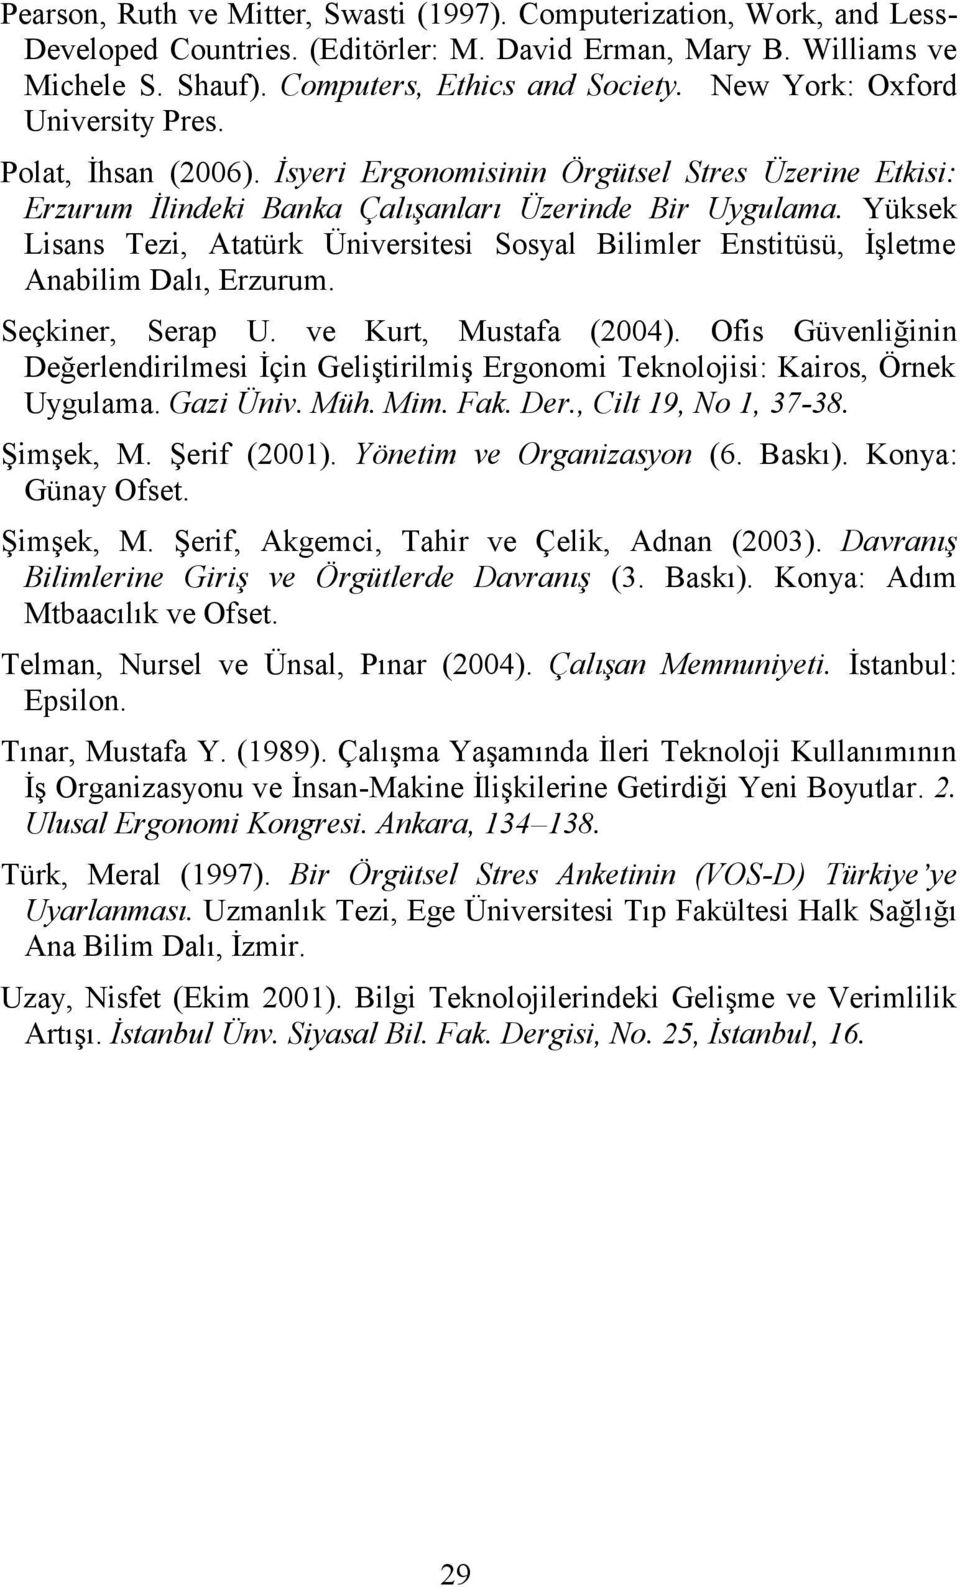 Yüksek Lisans Tezi, Atatürk Üniversitesi Sosyal Bilimler Enstitüsü, İşletme Anabilim Dalı, Erzurum. Seçkiner, Serap U. ve Kurt, Mustafa (2004).